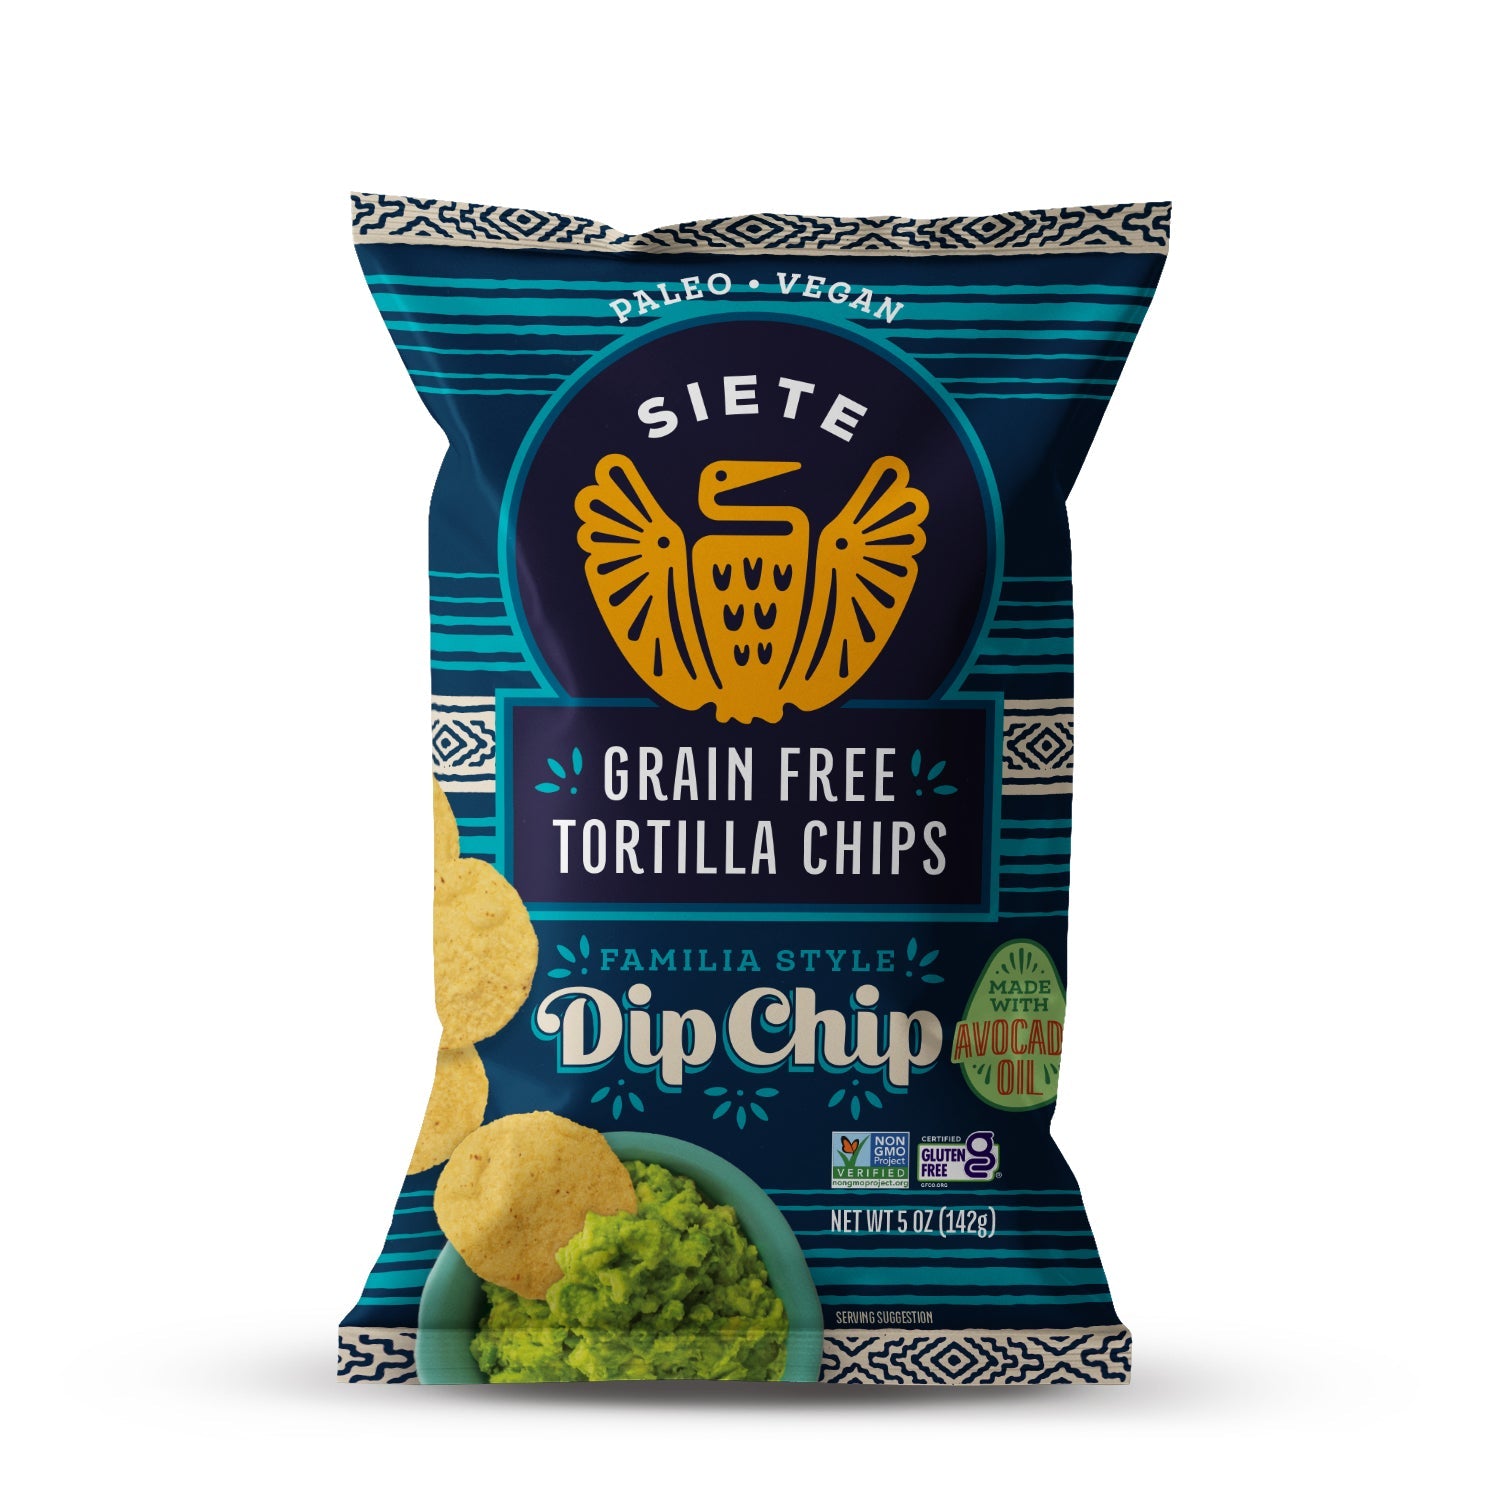 Siete Grain Free Dip Chip Tortilla Chips (142g) - Lifestyle Markets